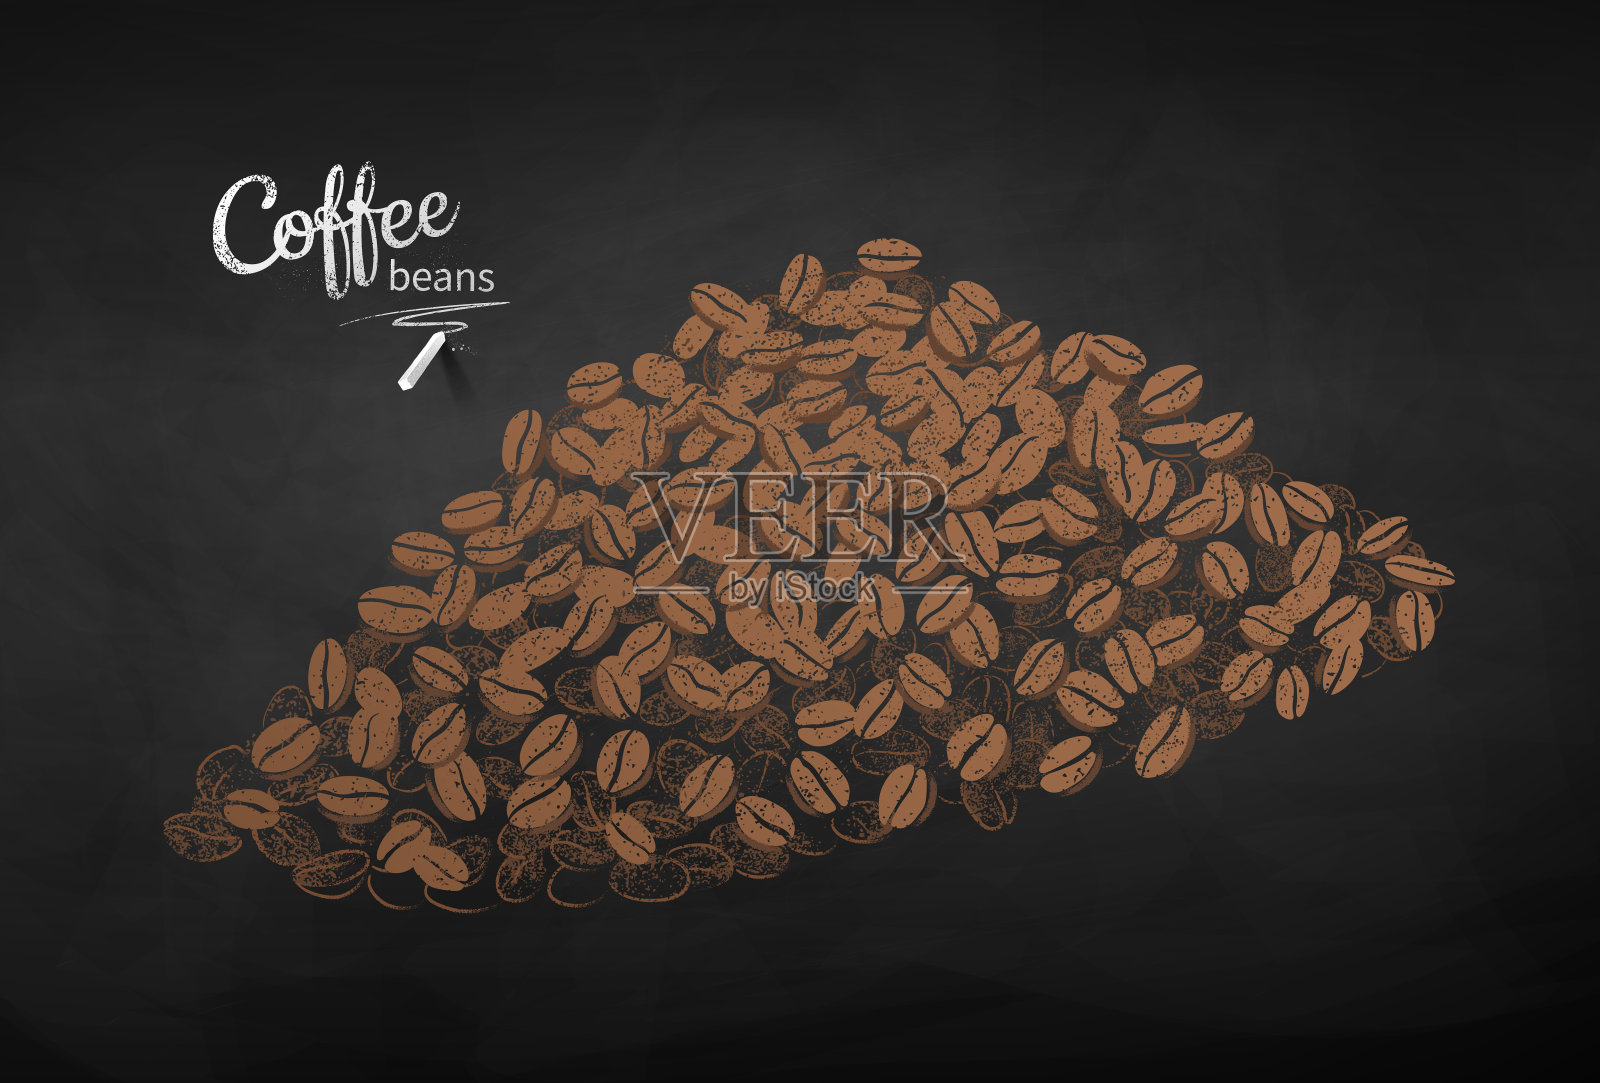 粉笔画了一堆咖啡豆的草图插画图片素材